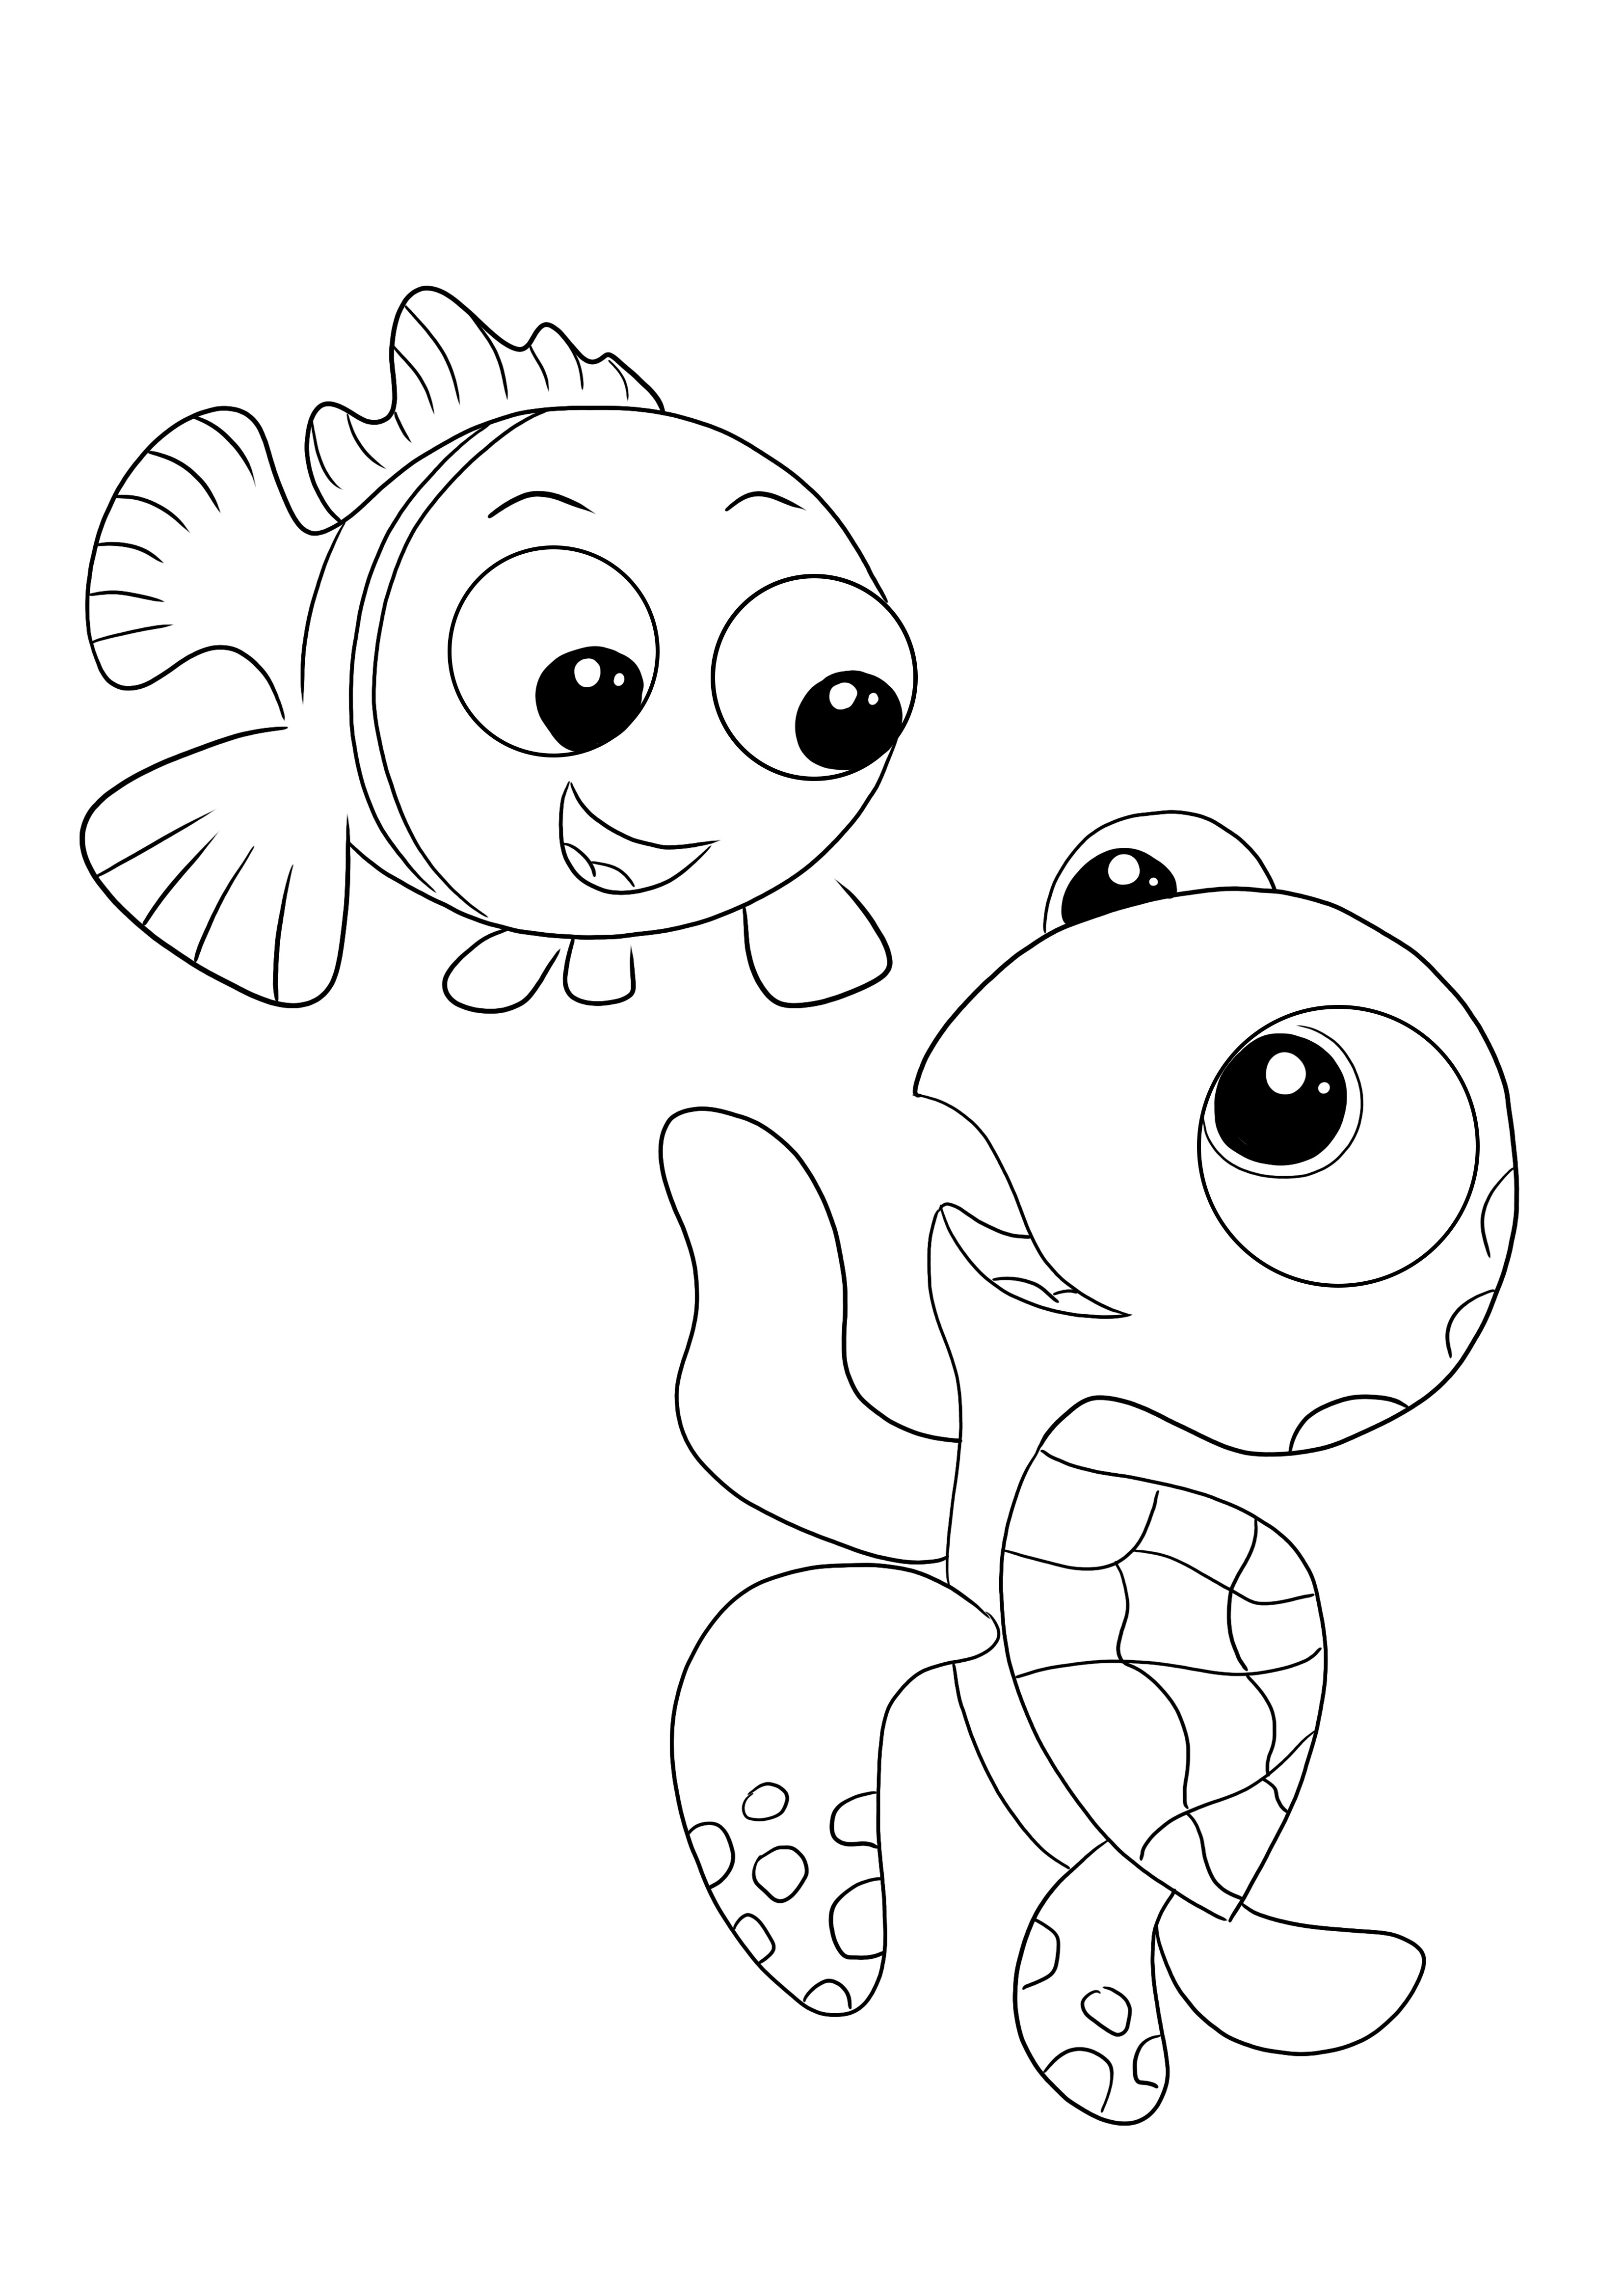 Liberi di colorare e stampare l'immagine da colorare per bambini di Crush e Nemo